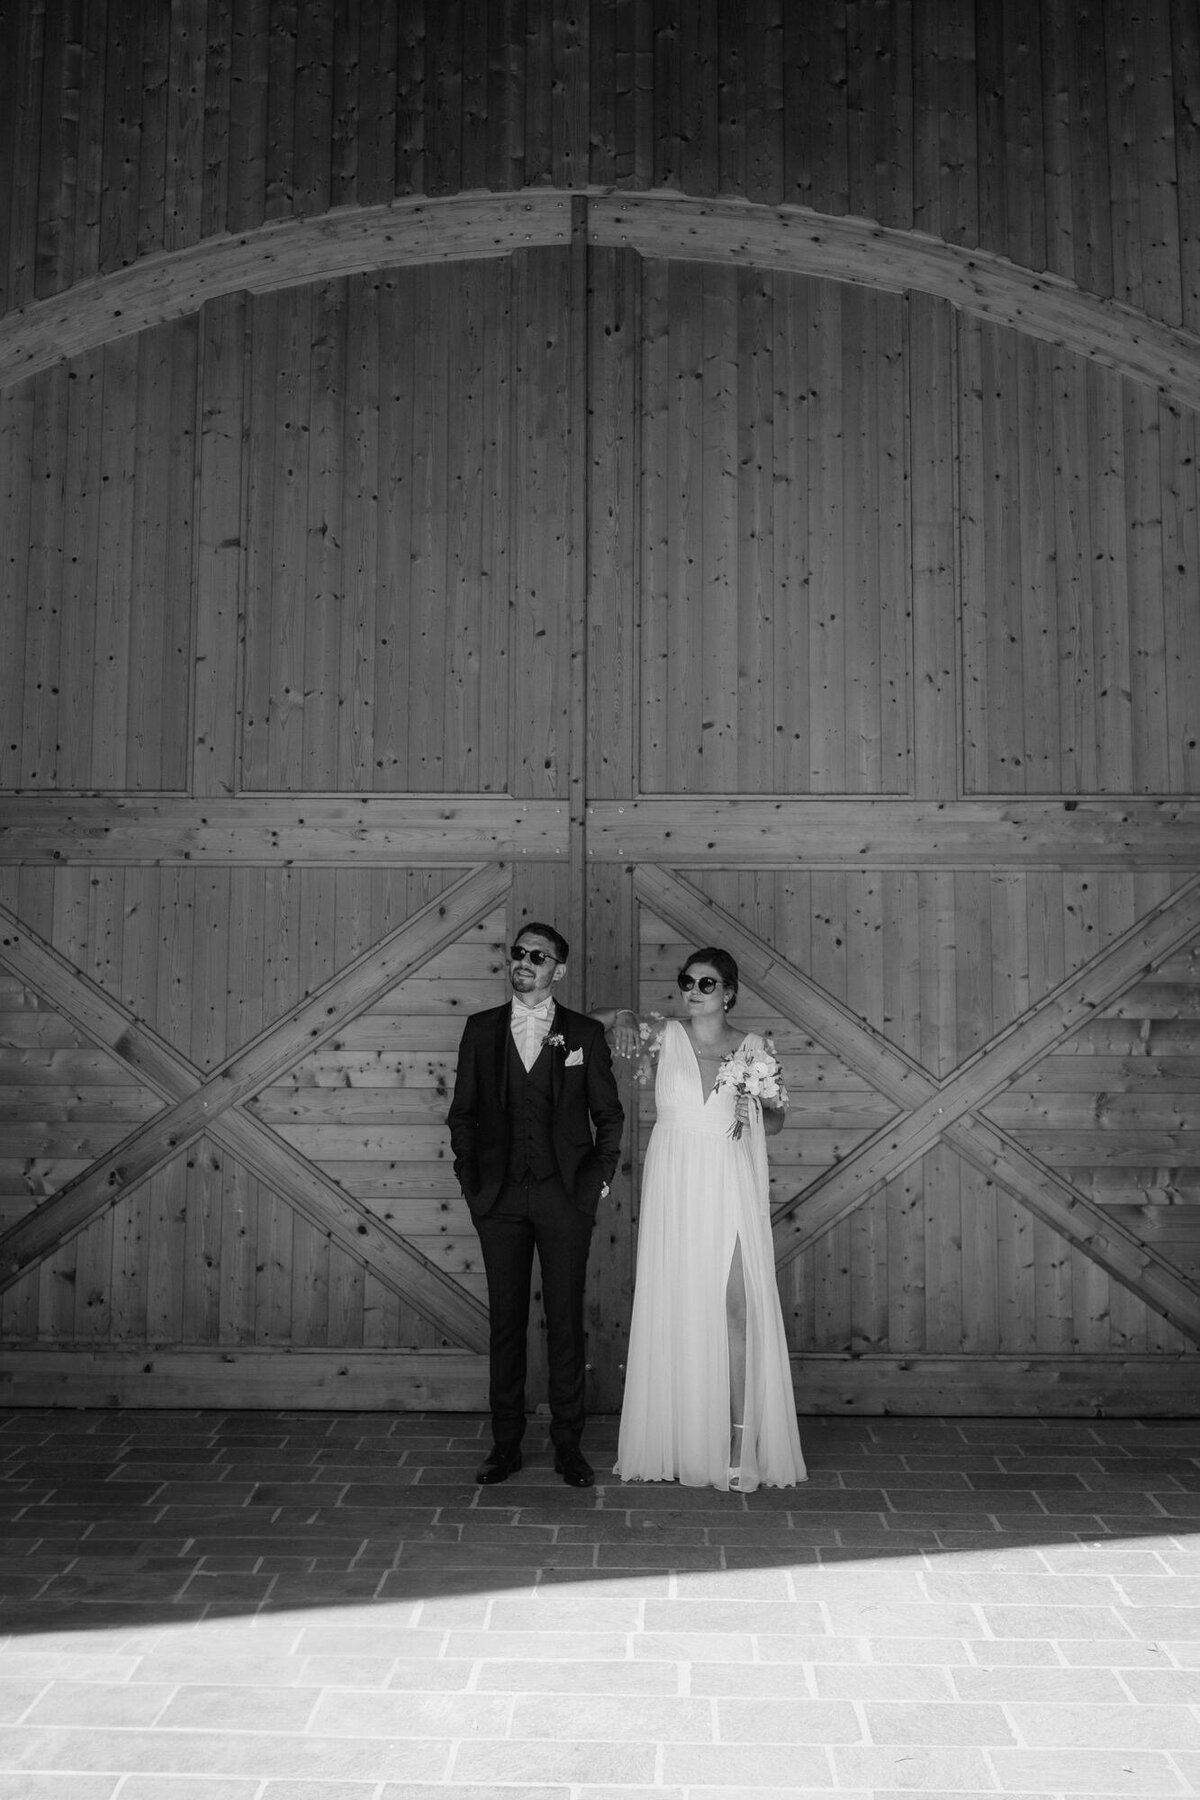 Das Hochzeitspaar steht vor einem großen Holztor in einer lässigen Pose nebeneinander. Beide tragen Sonnenbrillen.